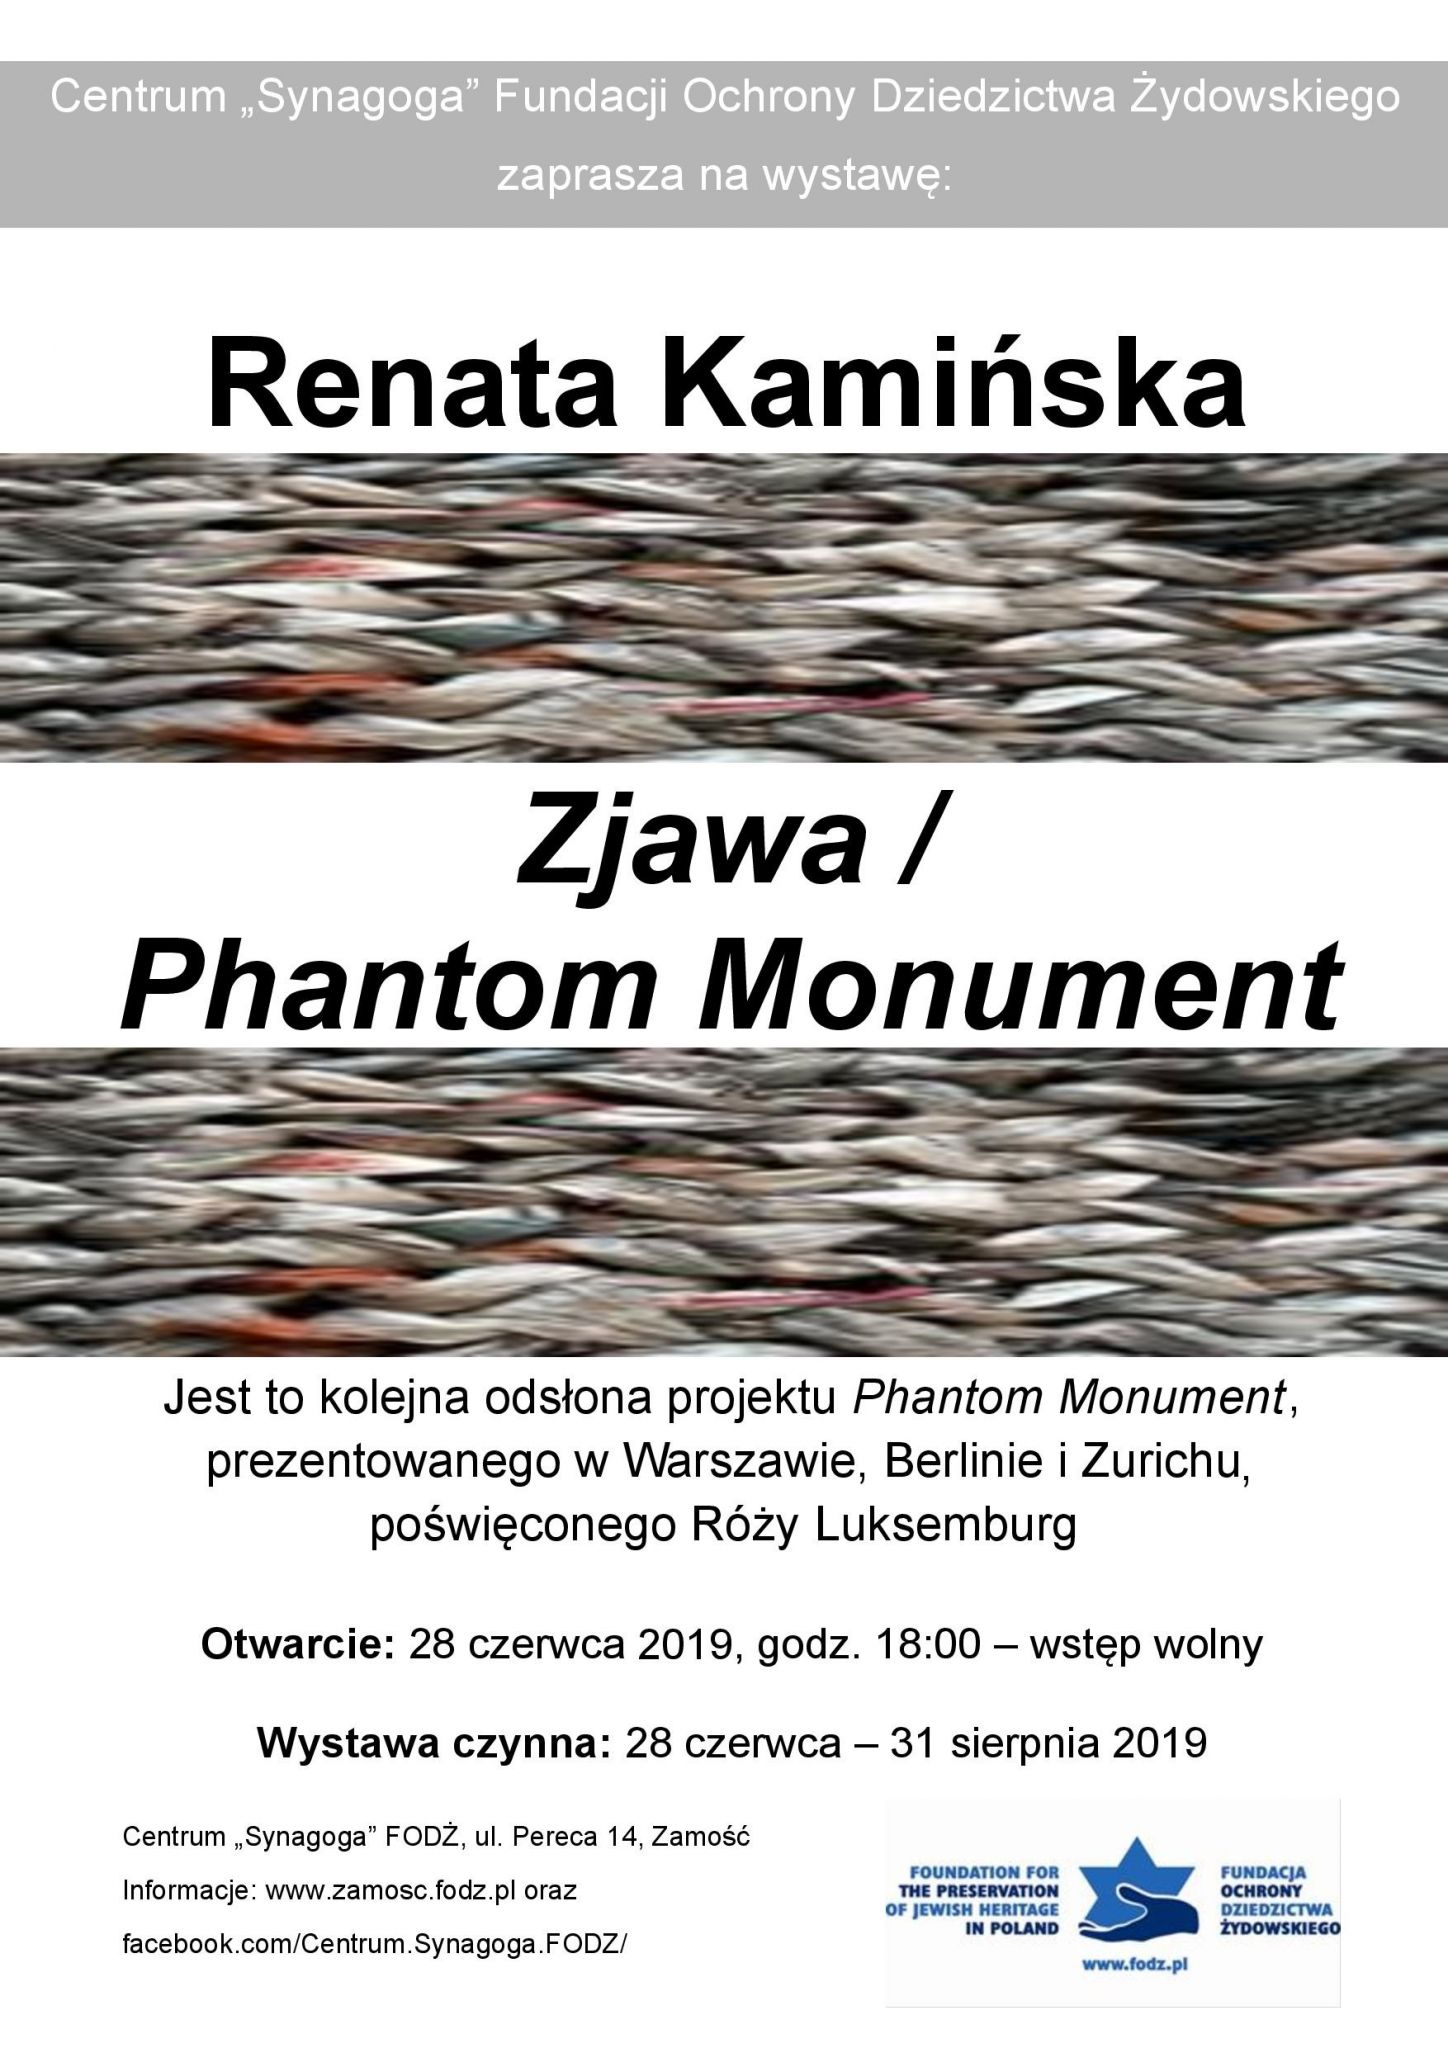 plakat "Zjawa/ Phantom Monument" - wystawa Renaty Kamińskiej w Centrum "Synagoga"